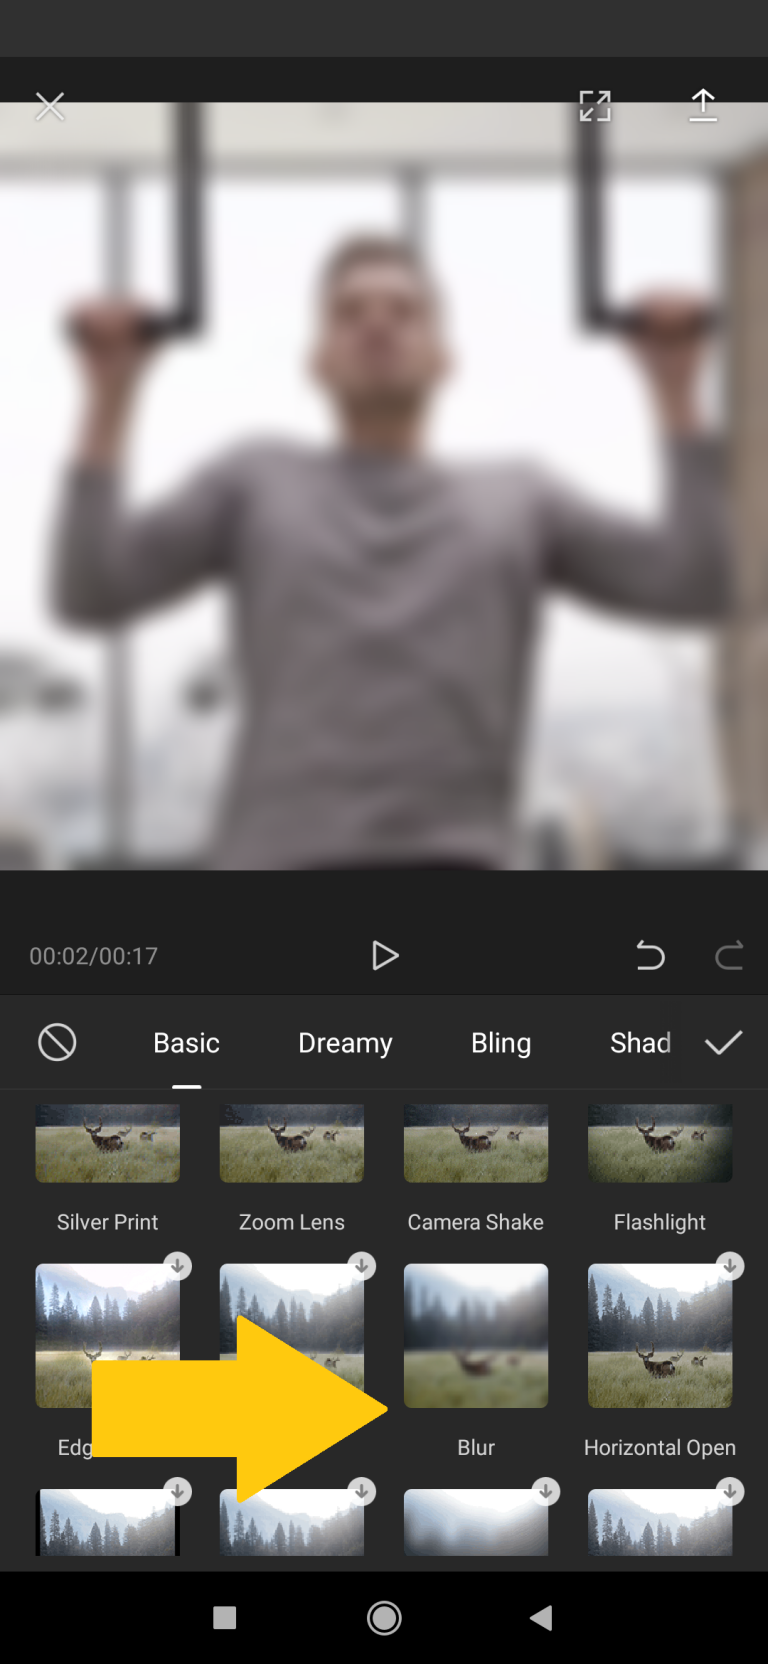 Cara Membuat Video Blur Di Capcut Secara Mudah - Pieter Nooten